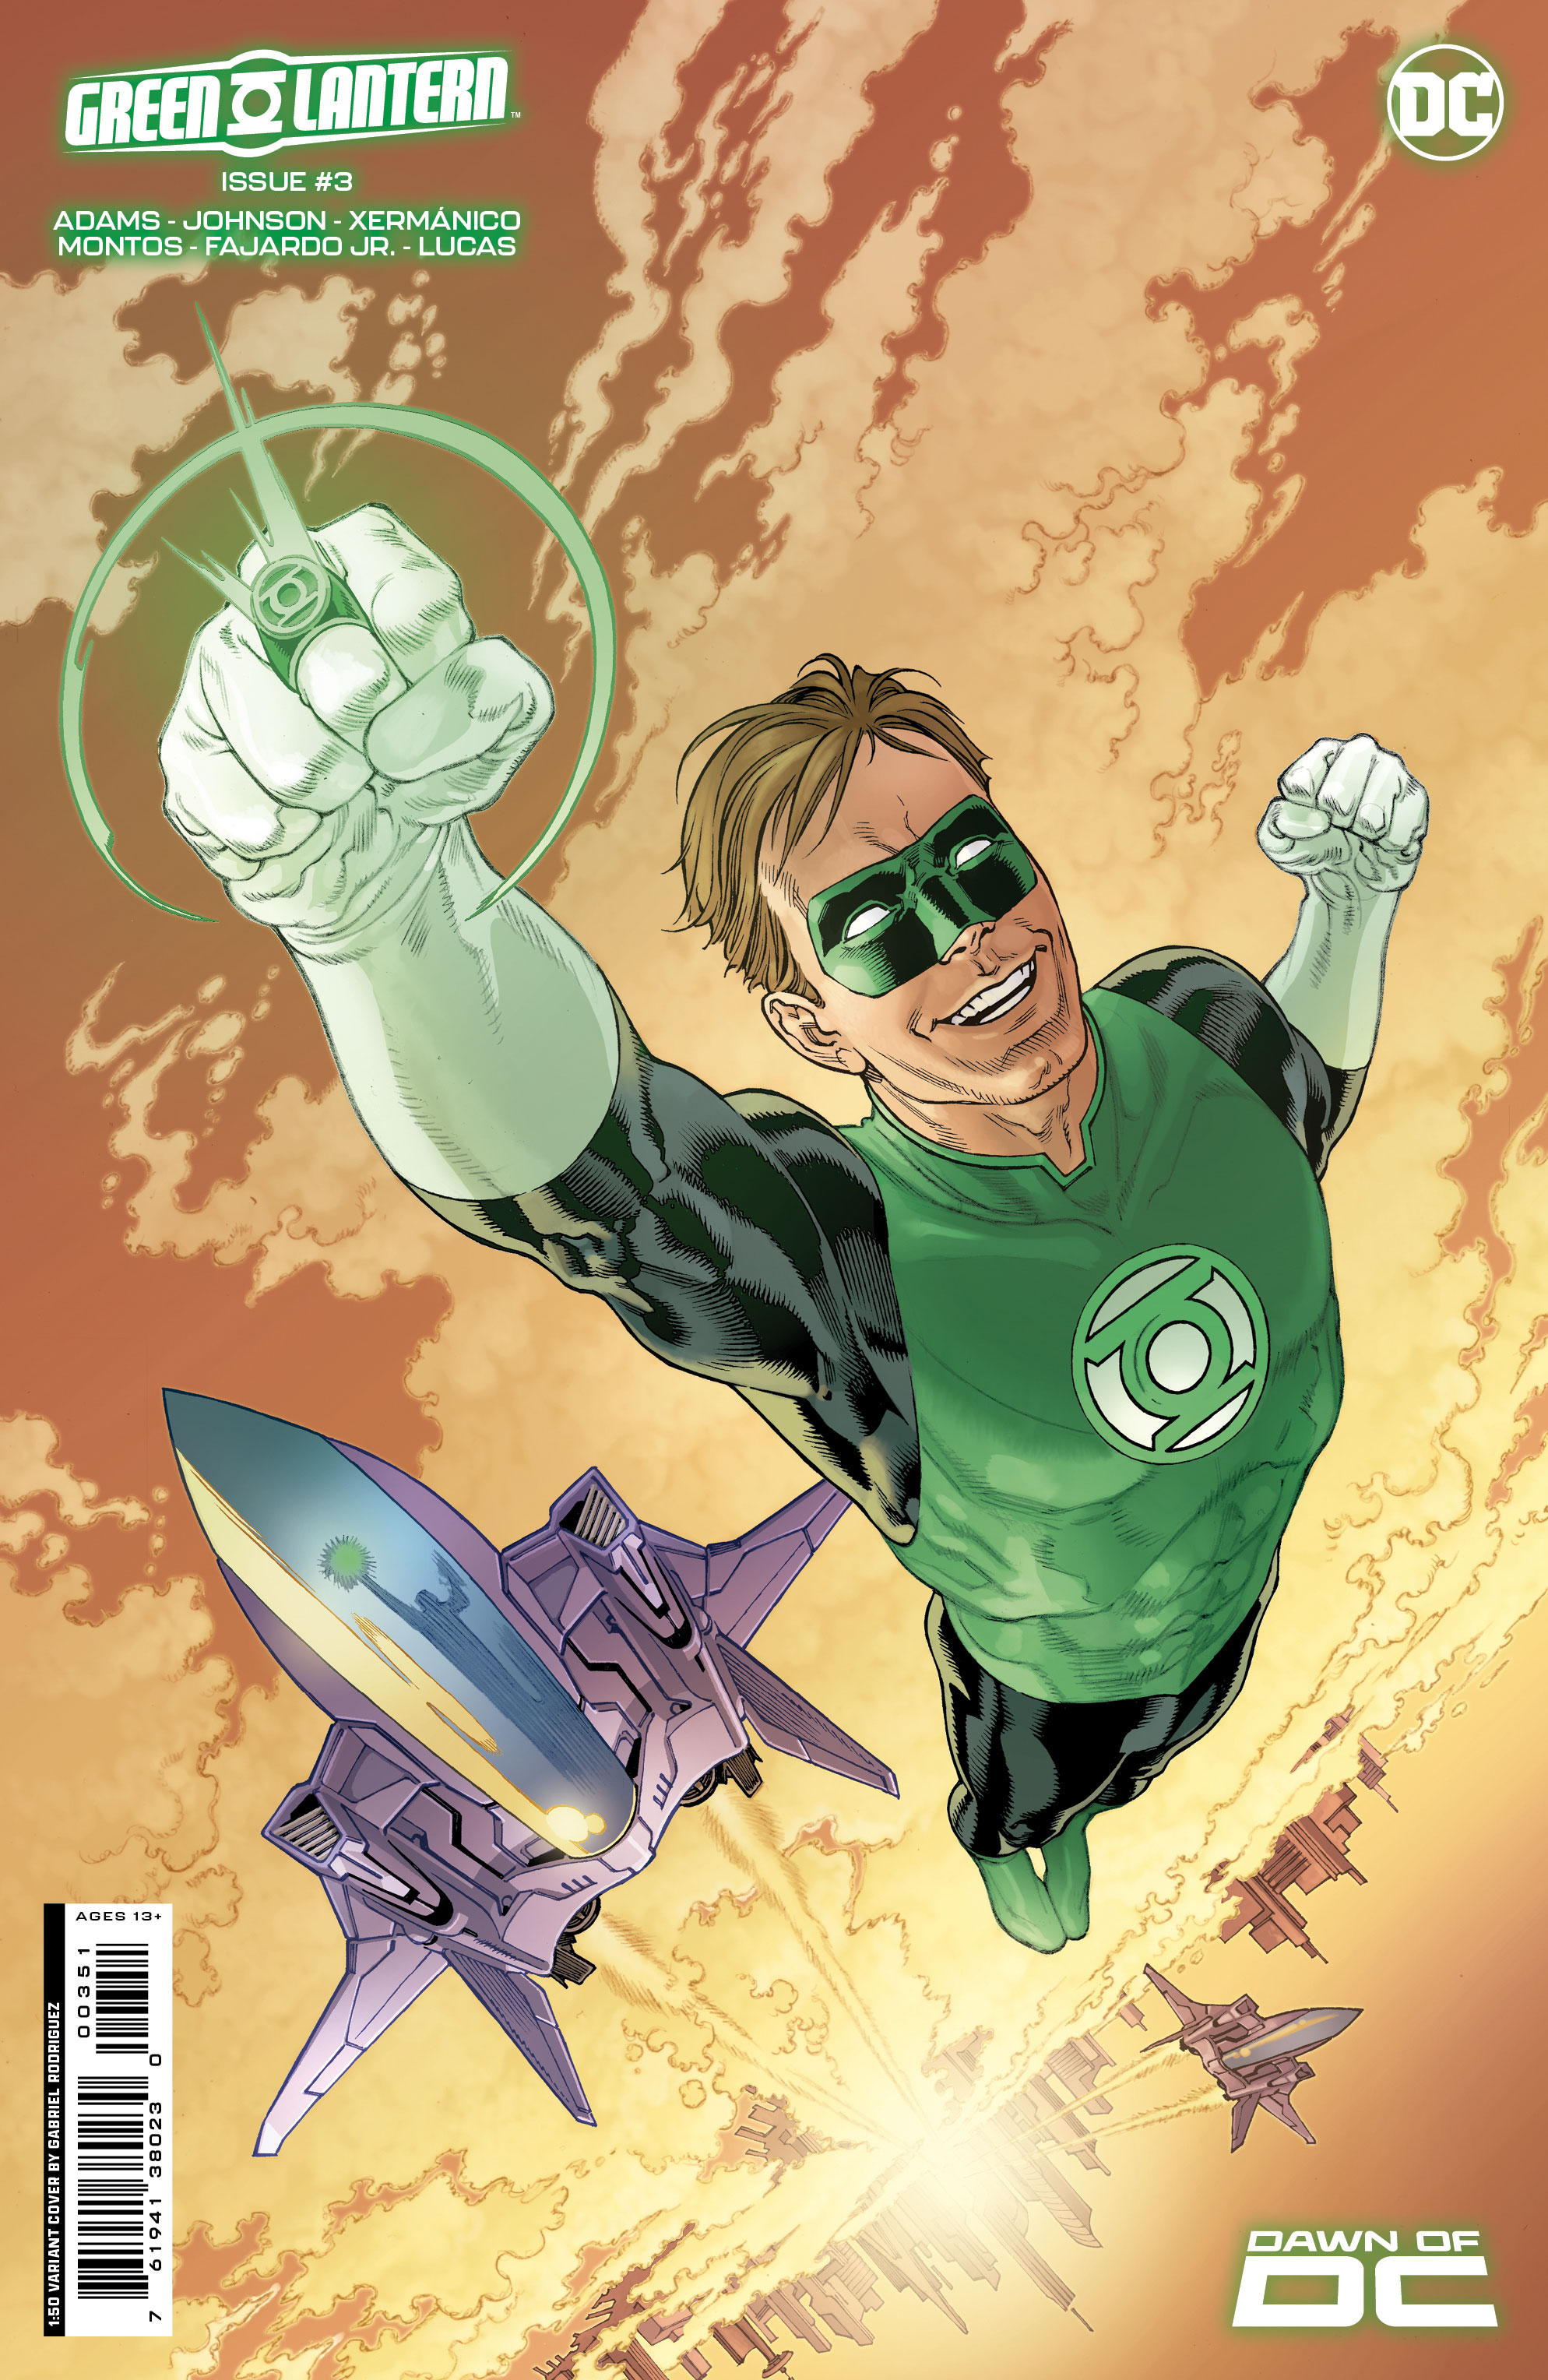 Obrázky z Green Lantern #3